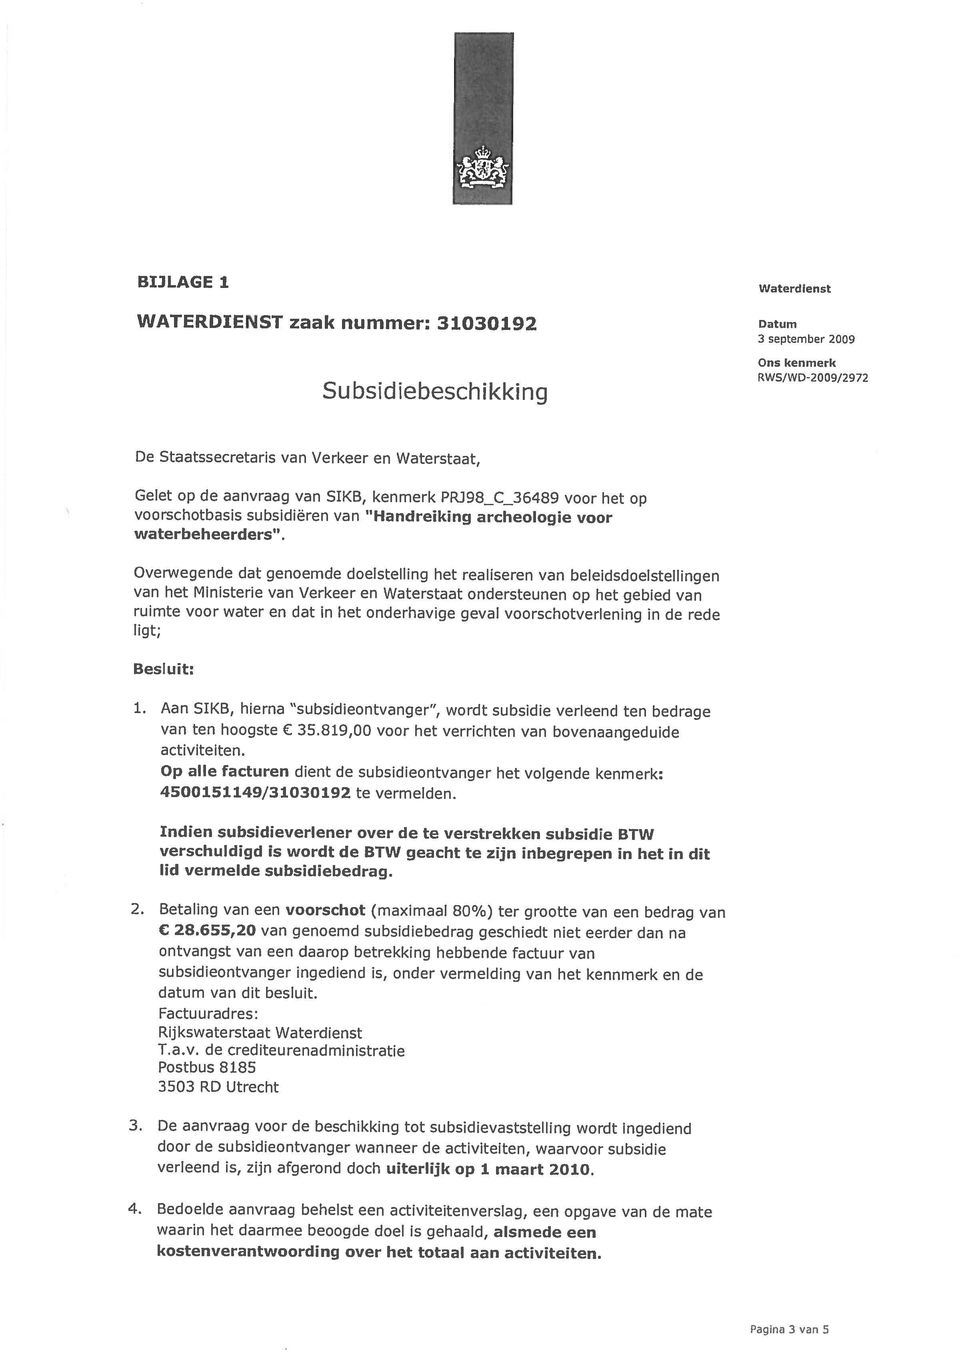 2010. 3. De aanvraag voor de beschikking tot subsidievaststelling wordt ingediend T.a.v. de crediteurenadministratie 3503 RD Utrecht datum van dit besluit.